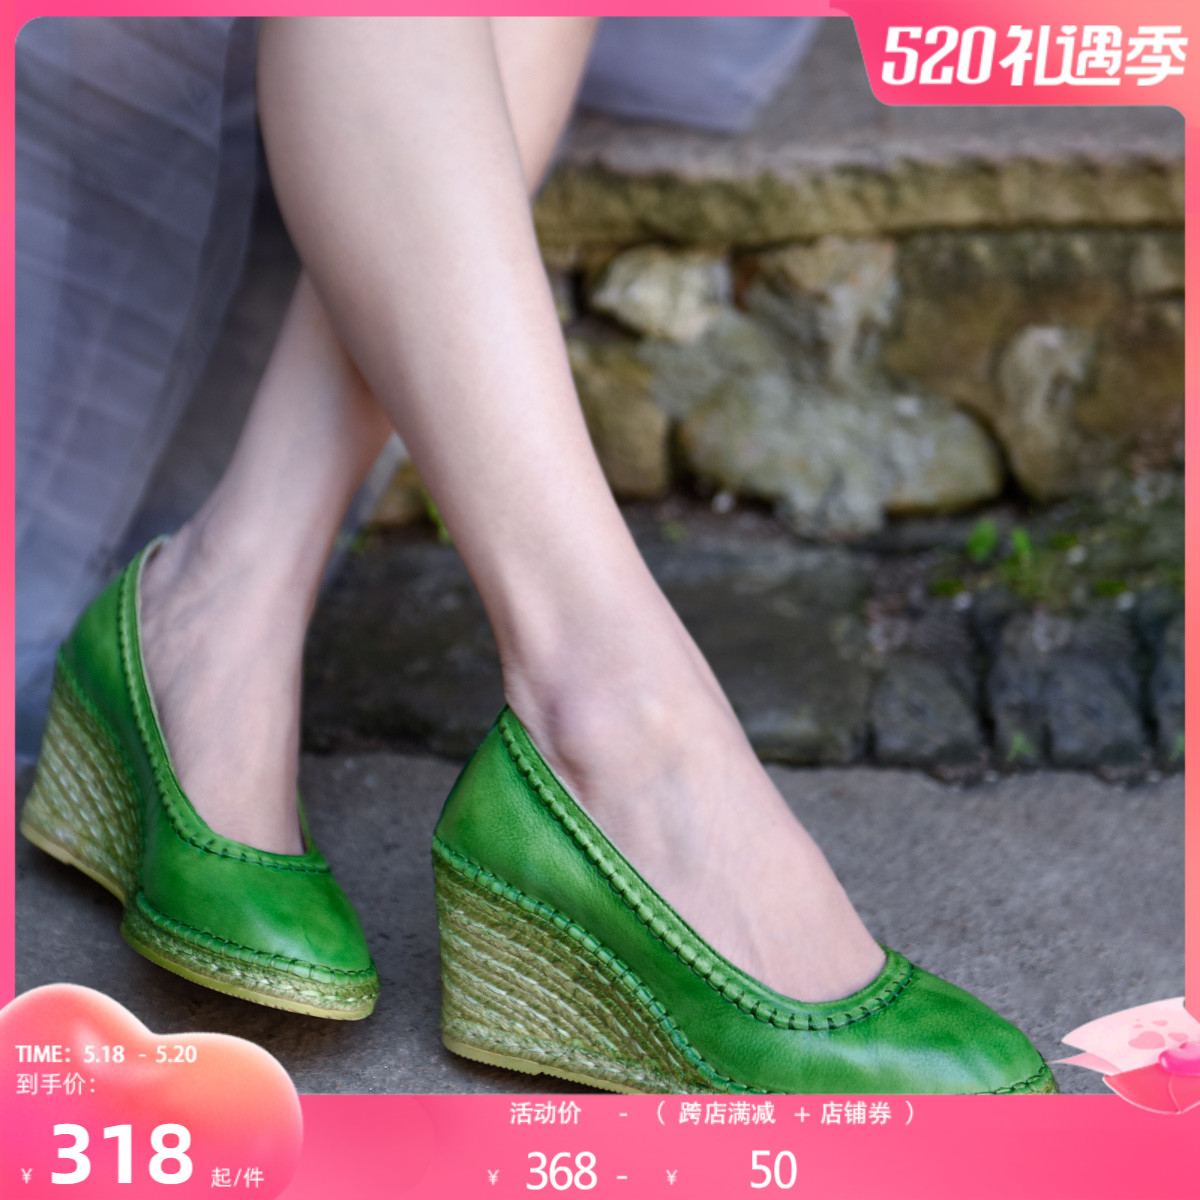 绿色坡跟鞋 Artmu阿木原创复古森女浅口单鞋麻编坡跟女鞋高跟鞋绿色手工鞋_推荐淘宝好看的绿色坡跟鞋